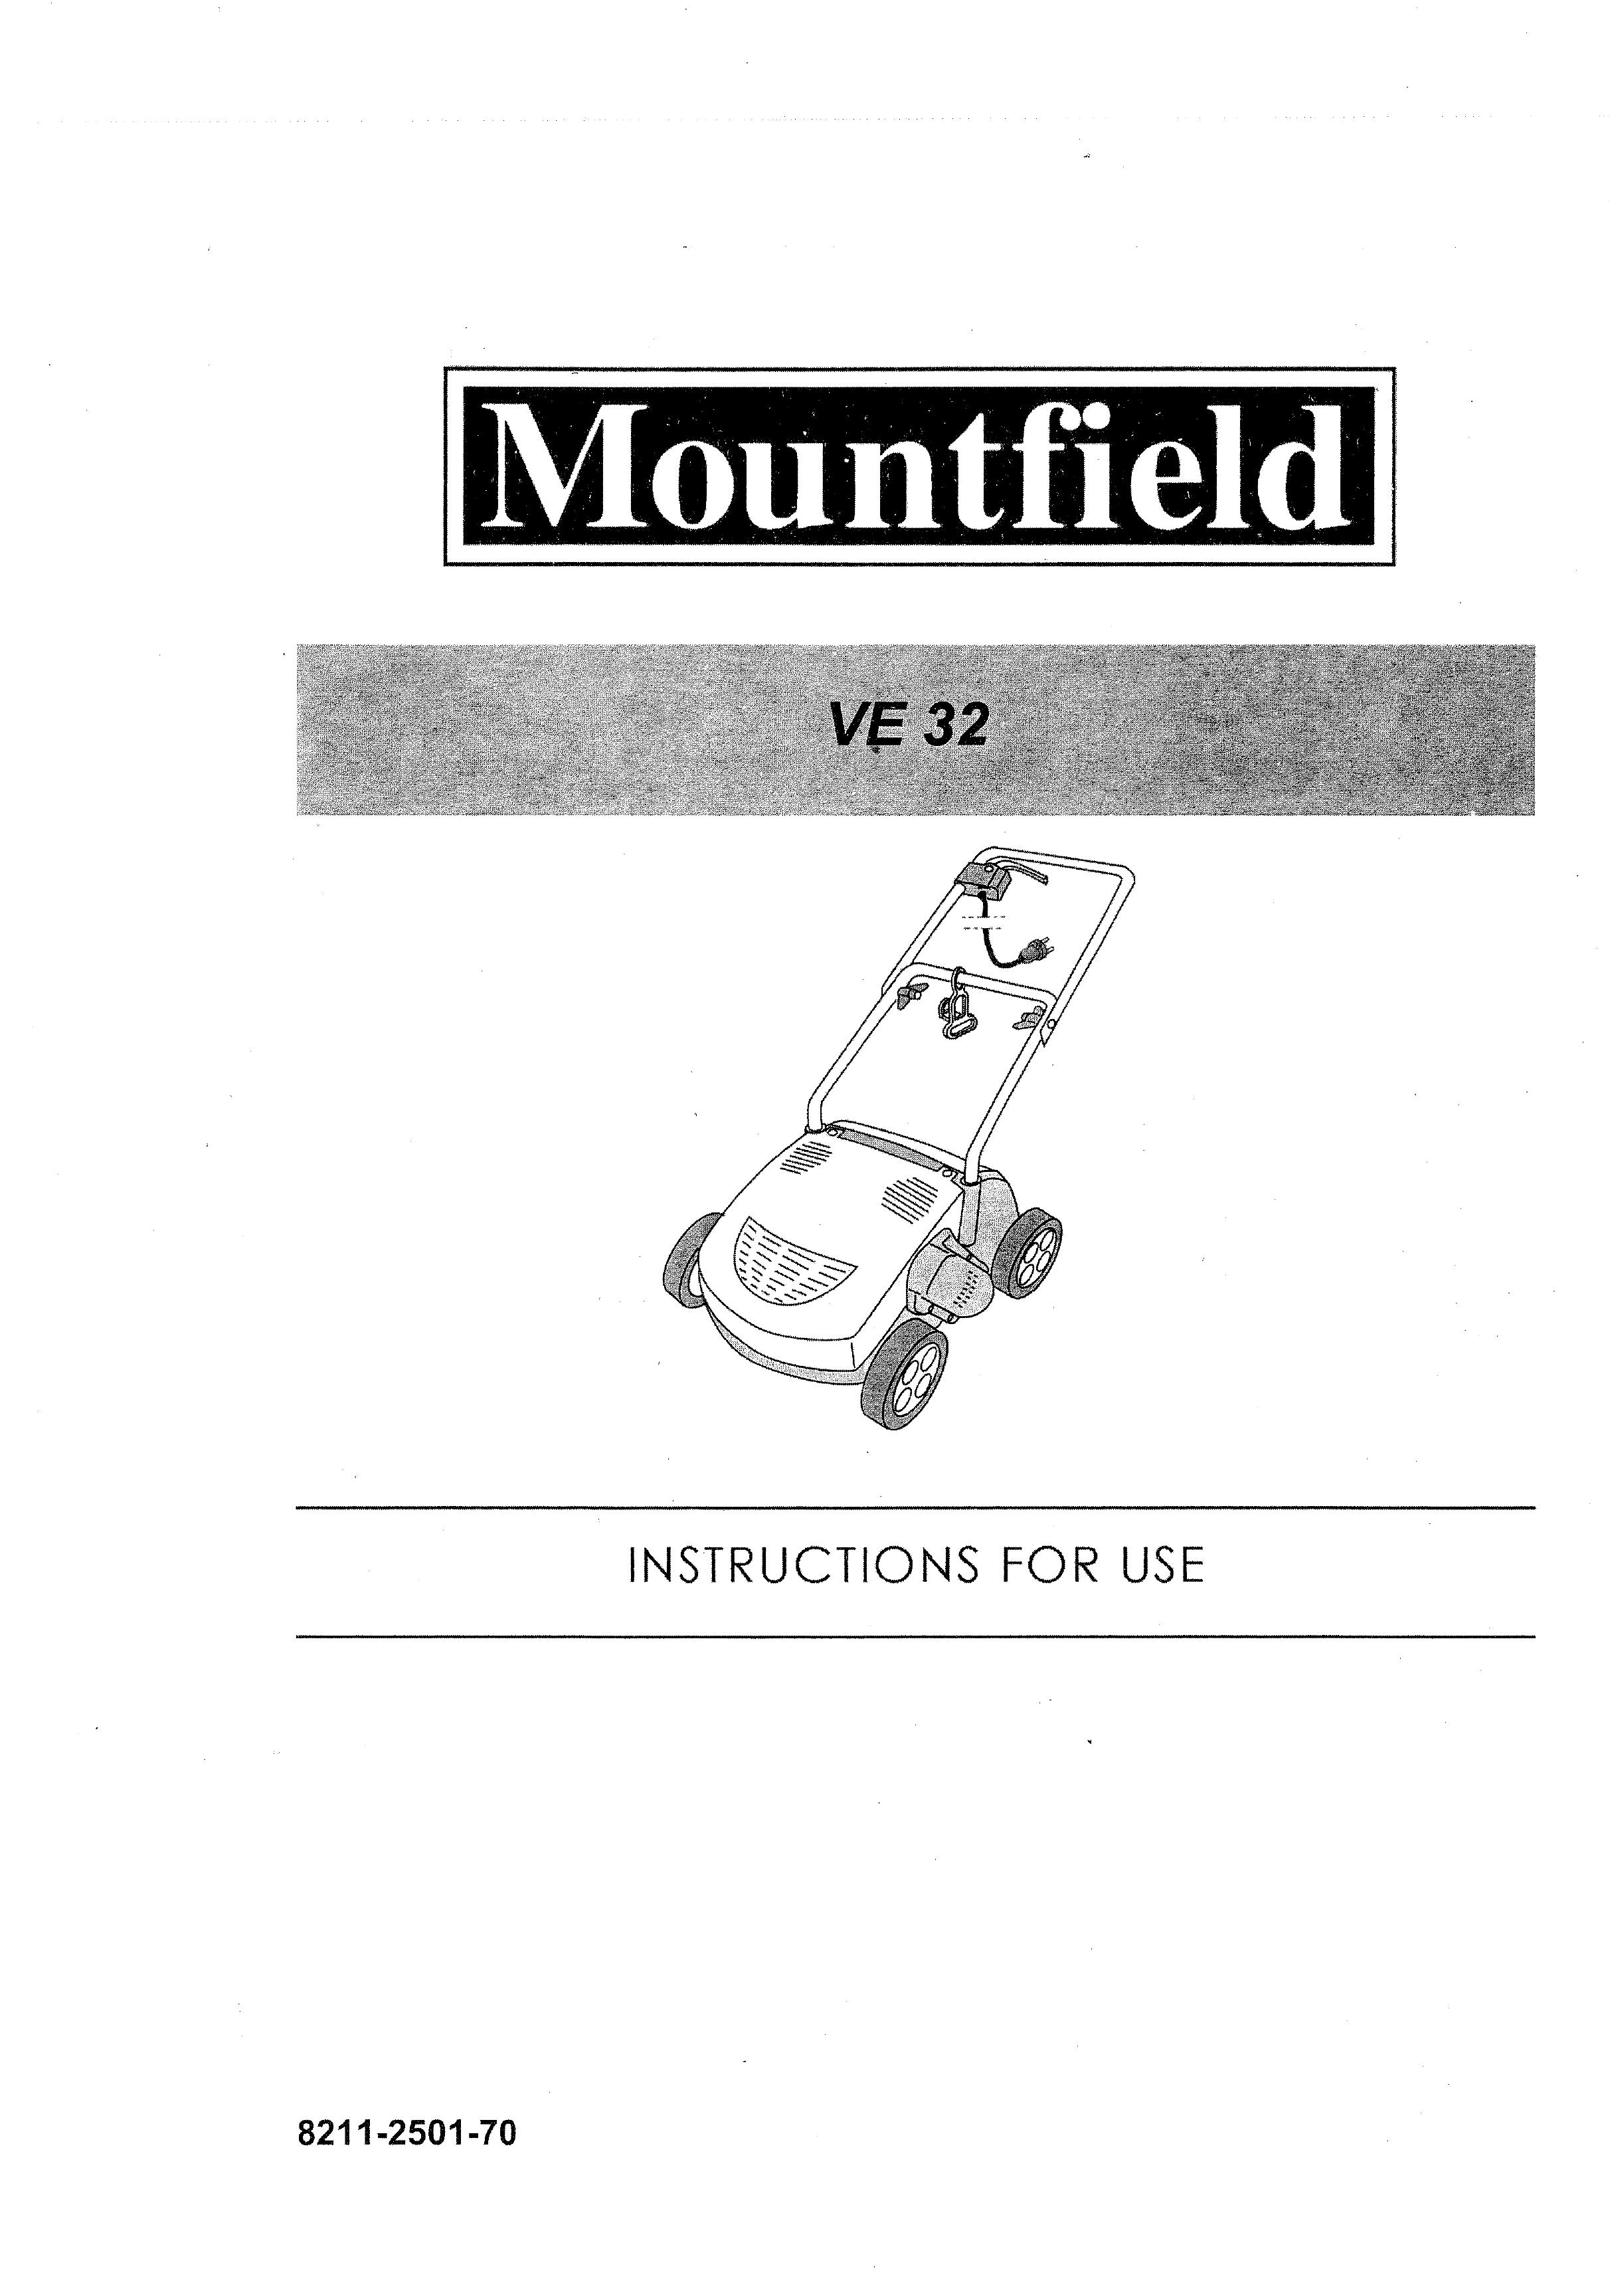 Mountfield VE 32 Lawn Mower User Manual